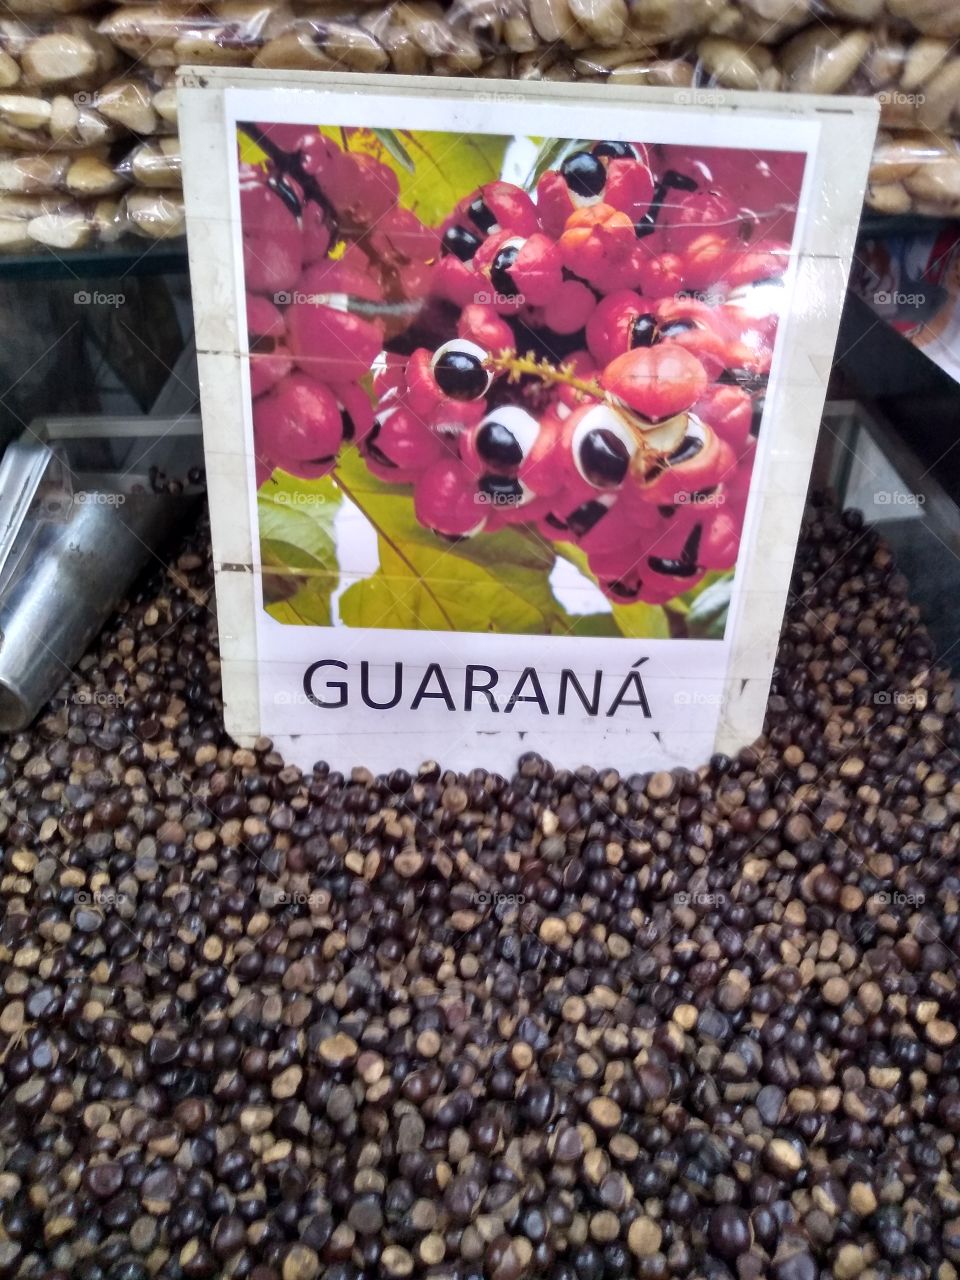 Cardiotonico-neuromuscular. O guaraná ou Paullinia Cupana, como é conhecido cientificamente, é o fruto do guaranazeiro, uma planta nativa da Amazônia. Por ser rico em cafeína, ou seja, estimulante do sistema nervoso central, o guaraná muitas vezes é